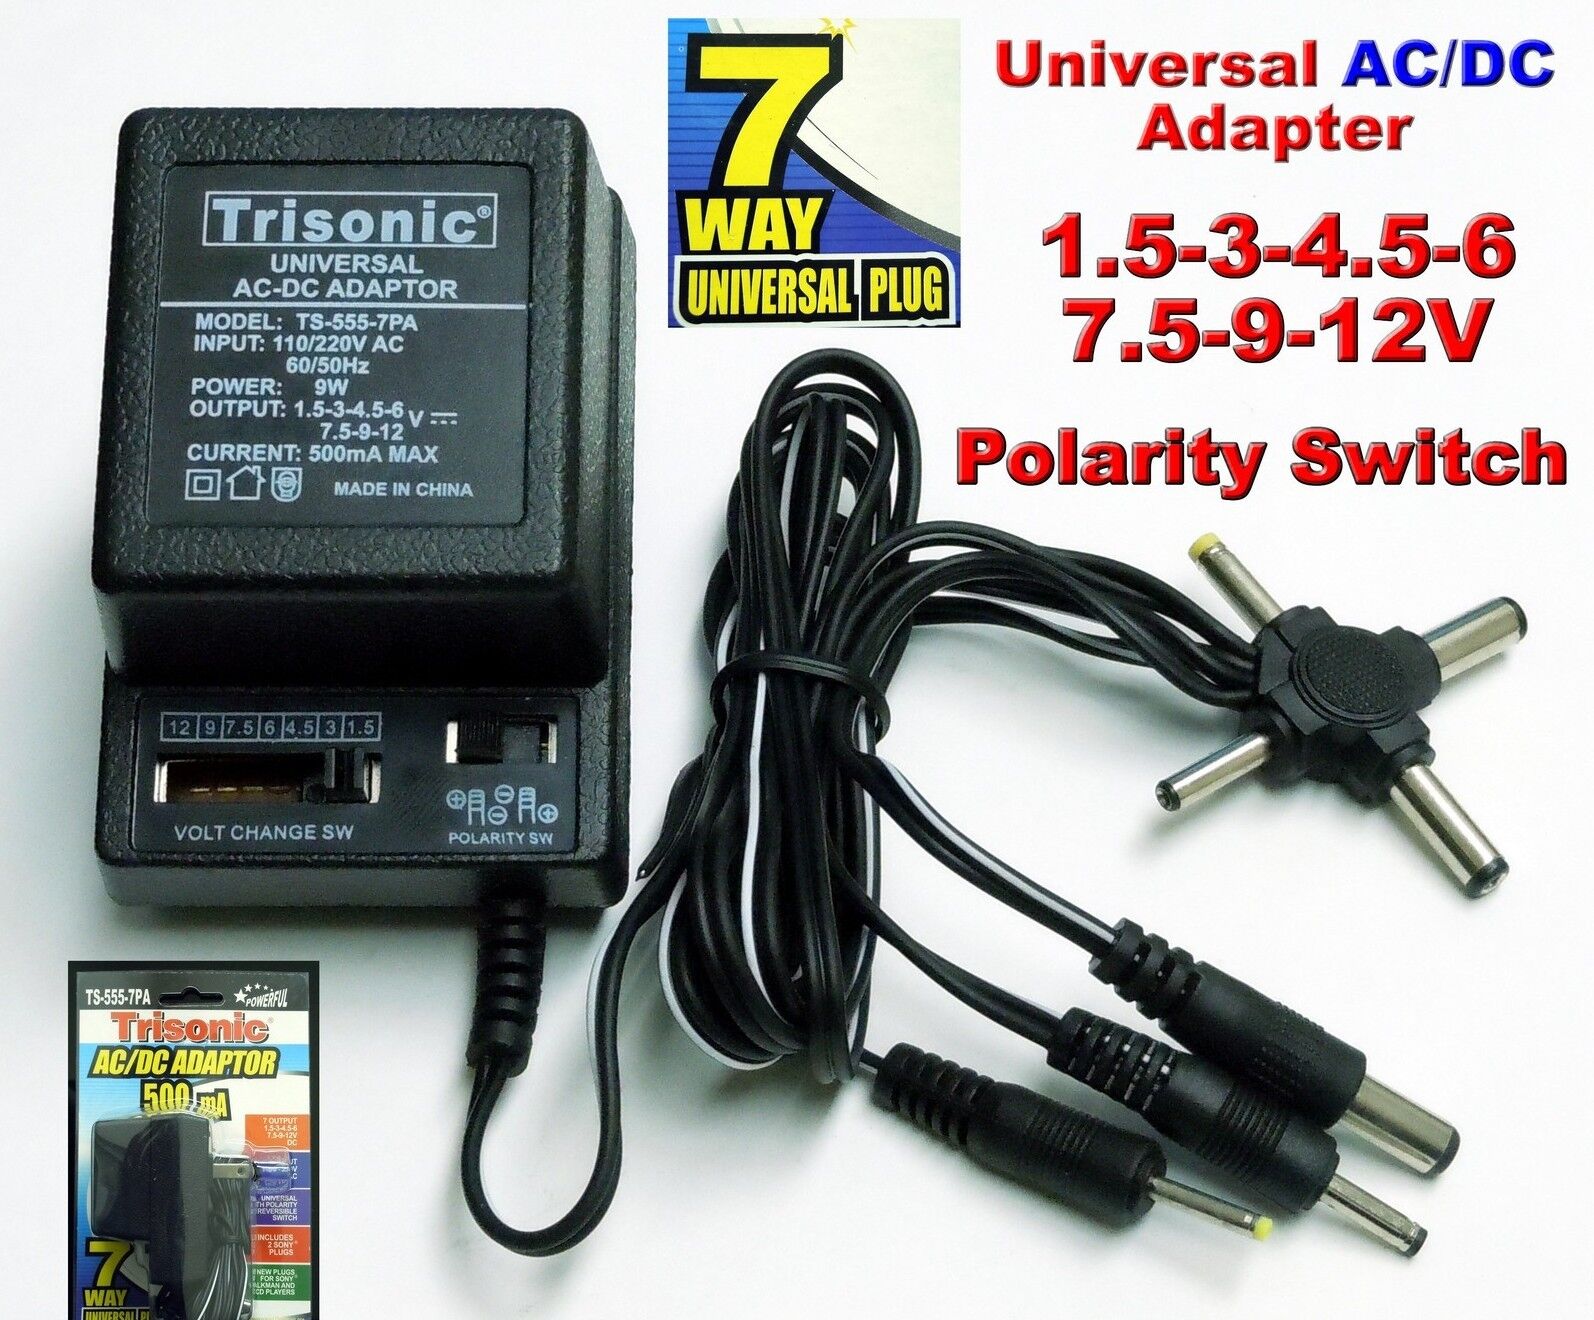 universal ac/dc power adapter output 3V 4.5V 6V 7.5V 9V 12V 500mA 2 sony plugs